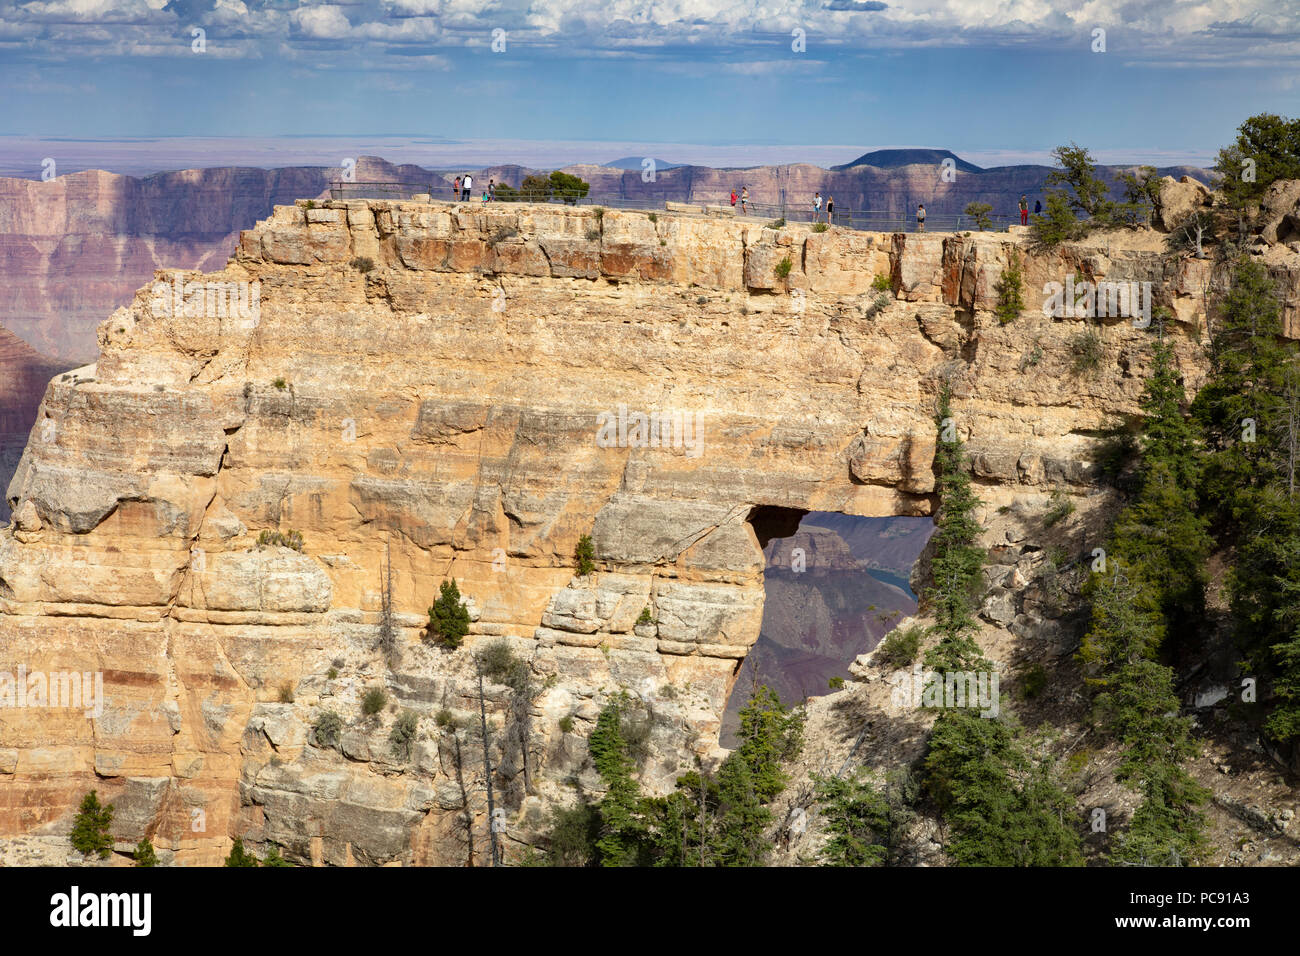 Les visiteurs de l'Ange - Fenêtre de la North Rim du Grand Canyon, AZ Banque D'Images